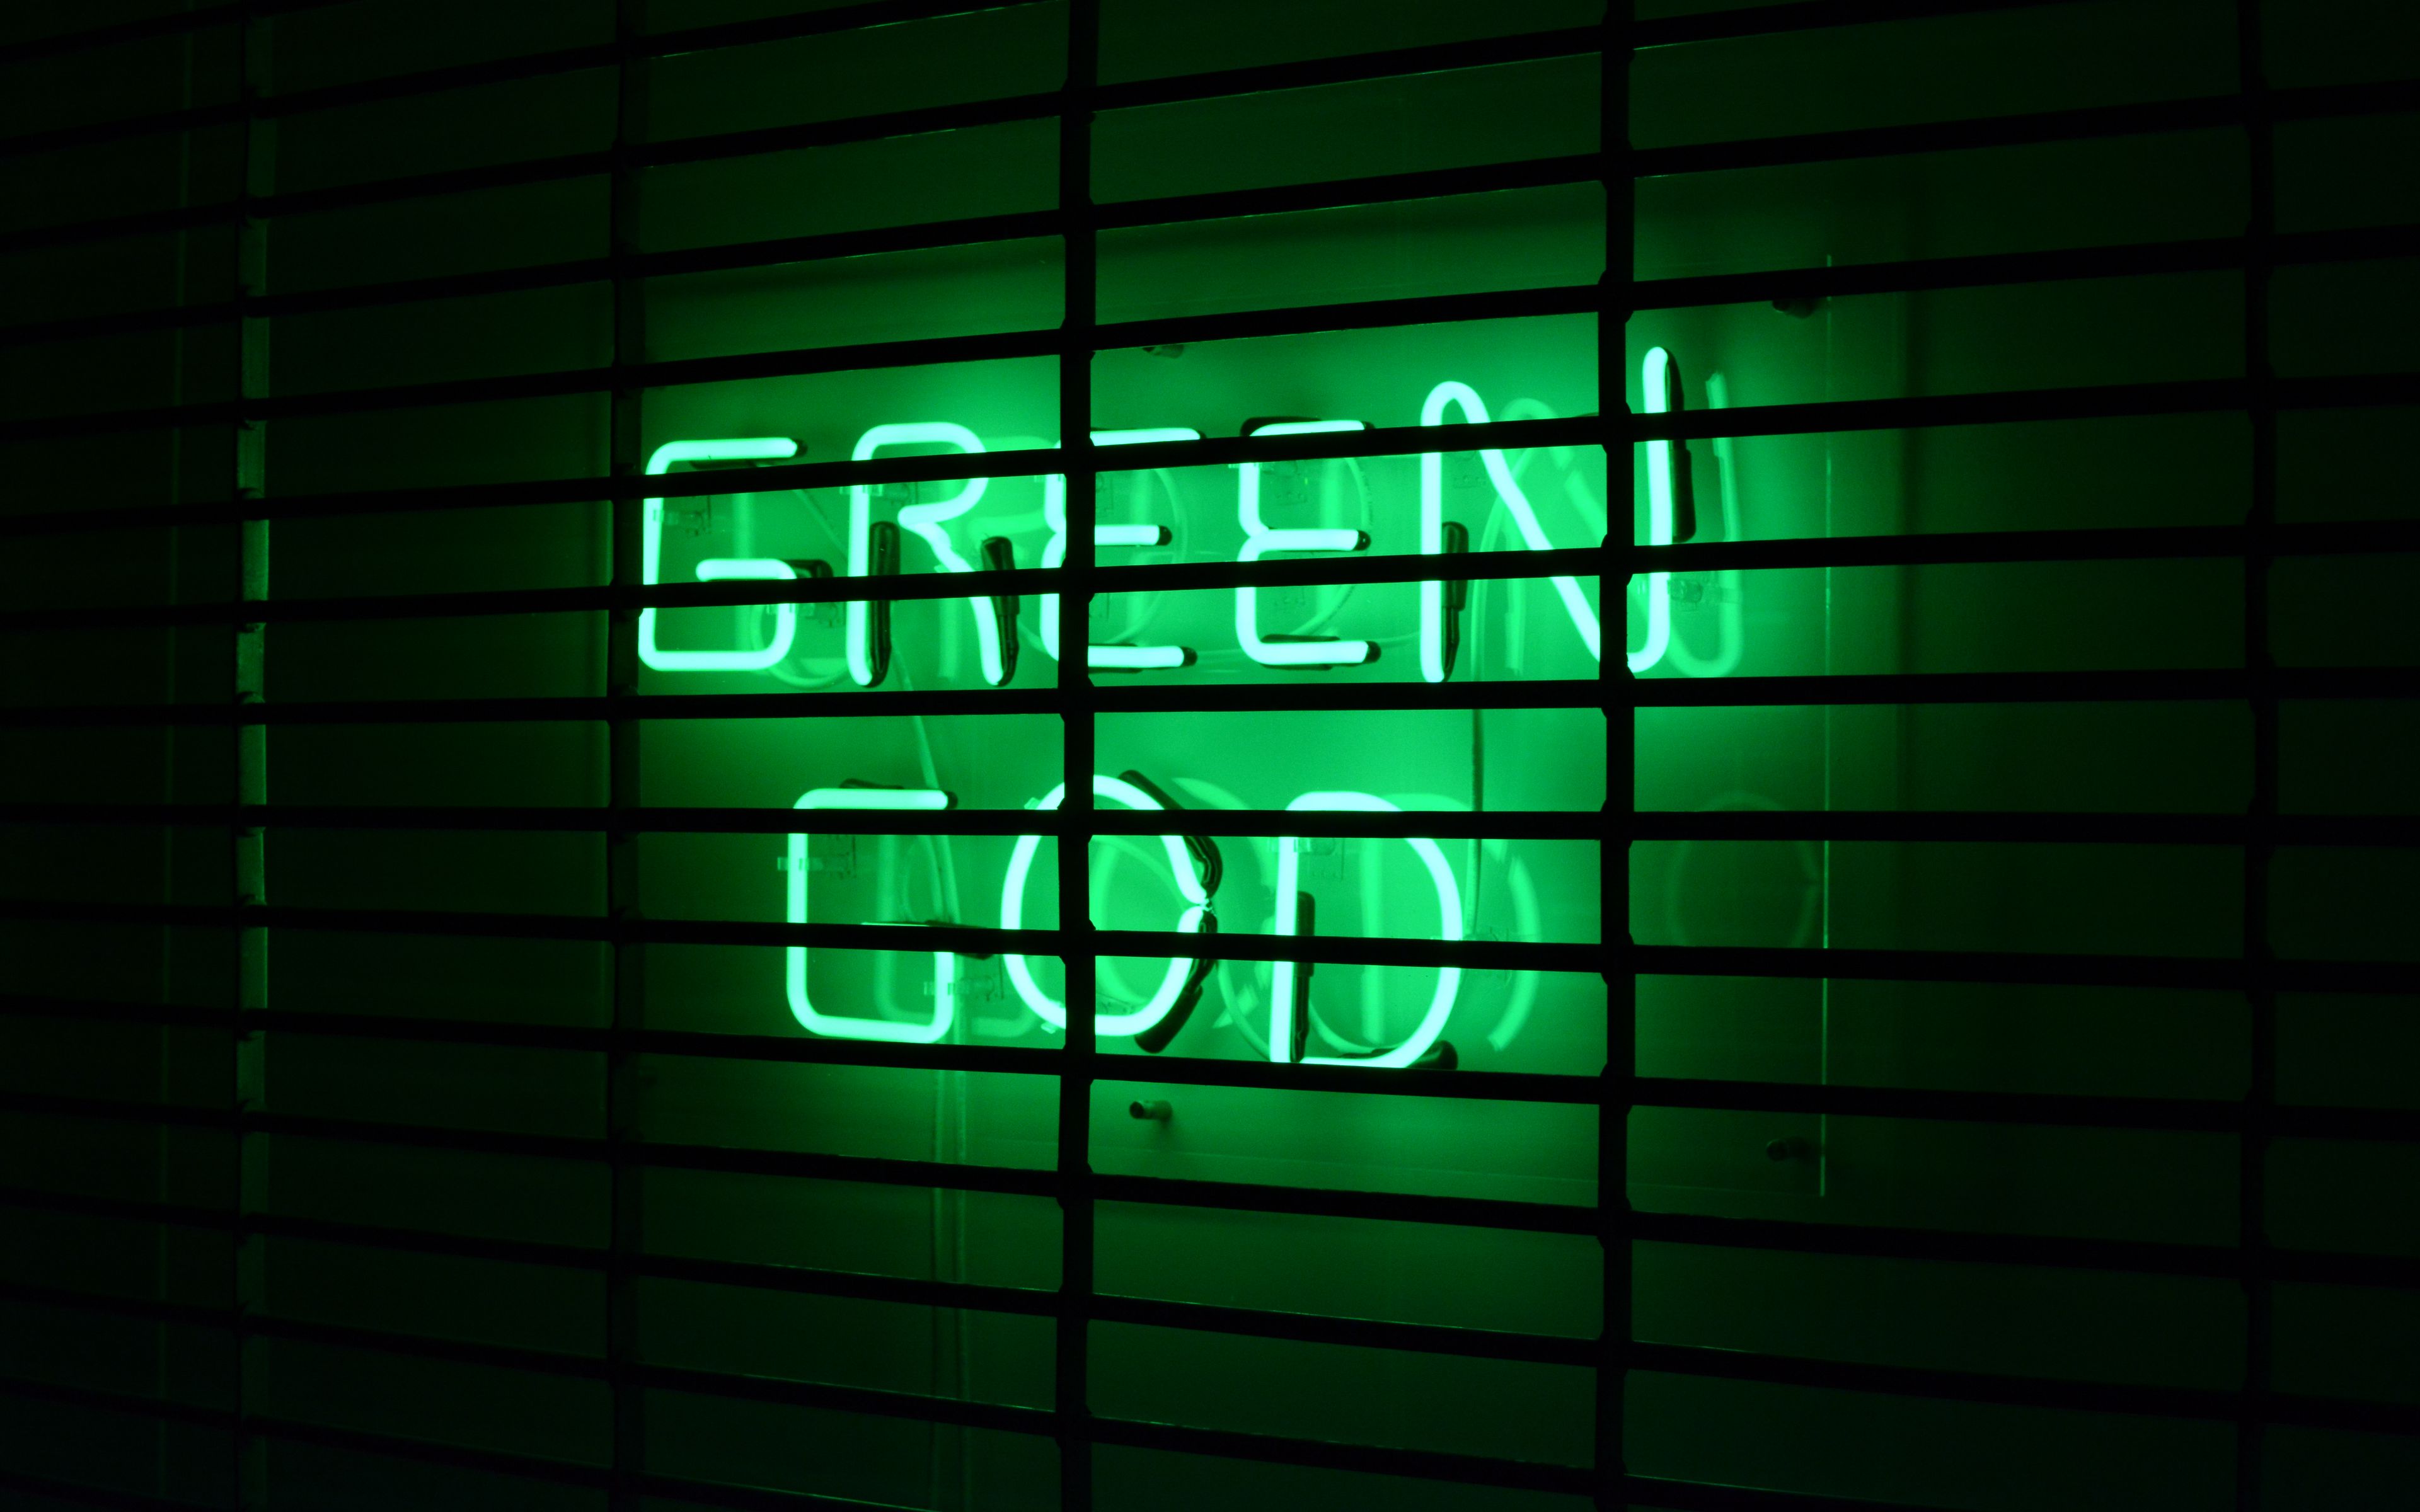 Hình nền lattice Neon xanh lá cây sẽ mang lại cho bạn sự nổi bật và độc đáo khi sử dụng điện thoại của mình. Với thiết kế mạnh mẽ và hình ảnh lưới xanh neon tươi sáng, hình nền sẽ giúp bạn tạo ra một phong cách riêng và thu hút mọi ánh nhìn.